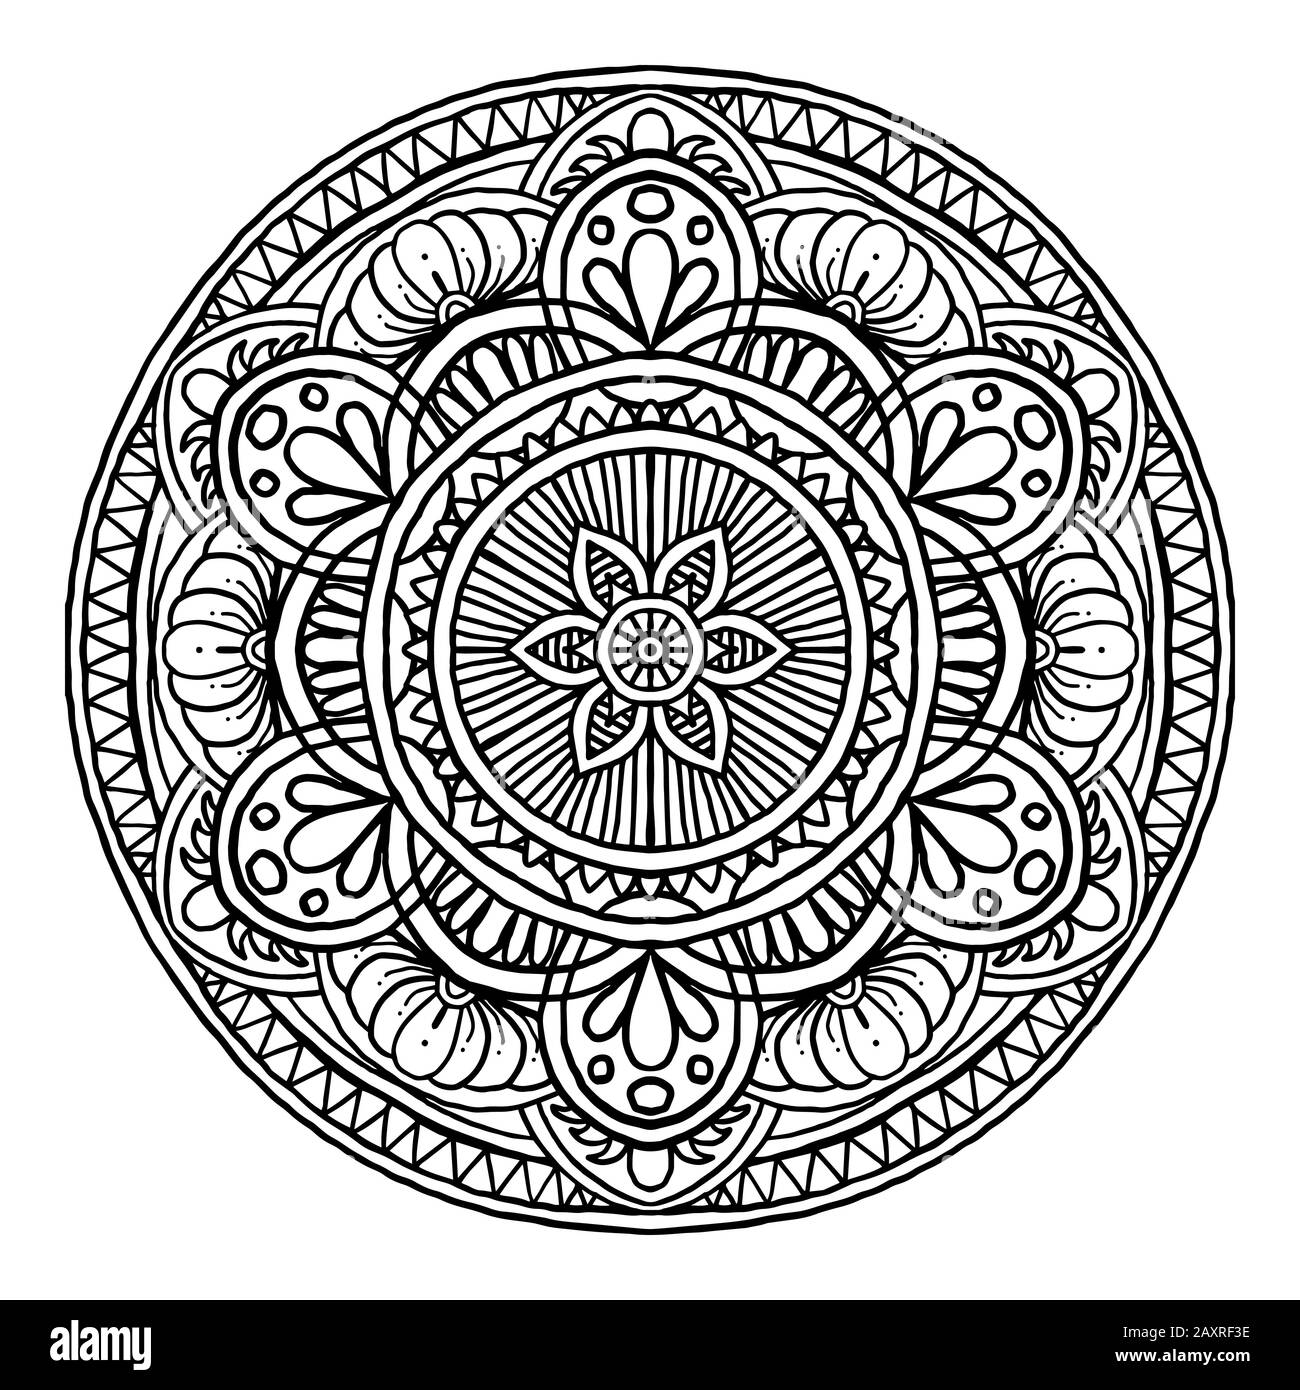 Contour Mandala décoratif rond ornement, peut être utilisé pour le livre de coloriage, la thérapie anti-stress, carte de vœux, l'imprimé de téléphone, etc. Dessin À La Main Illustration de Vecteur